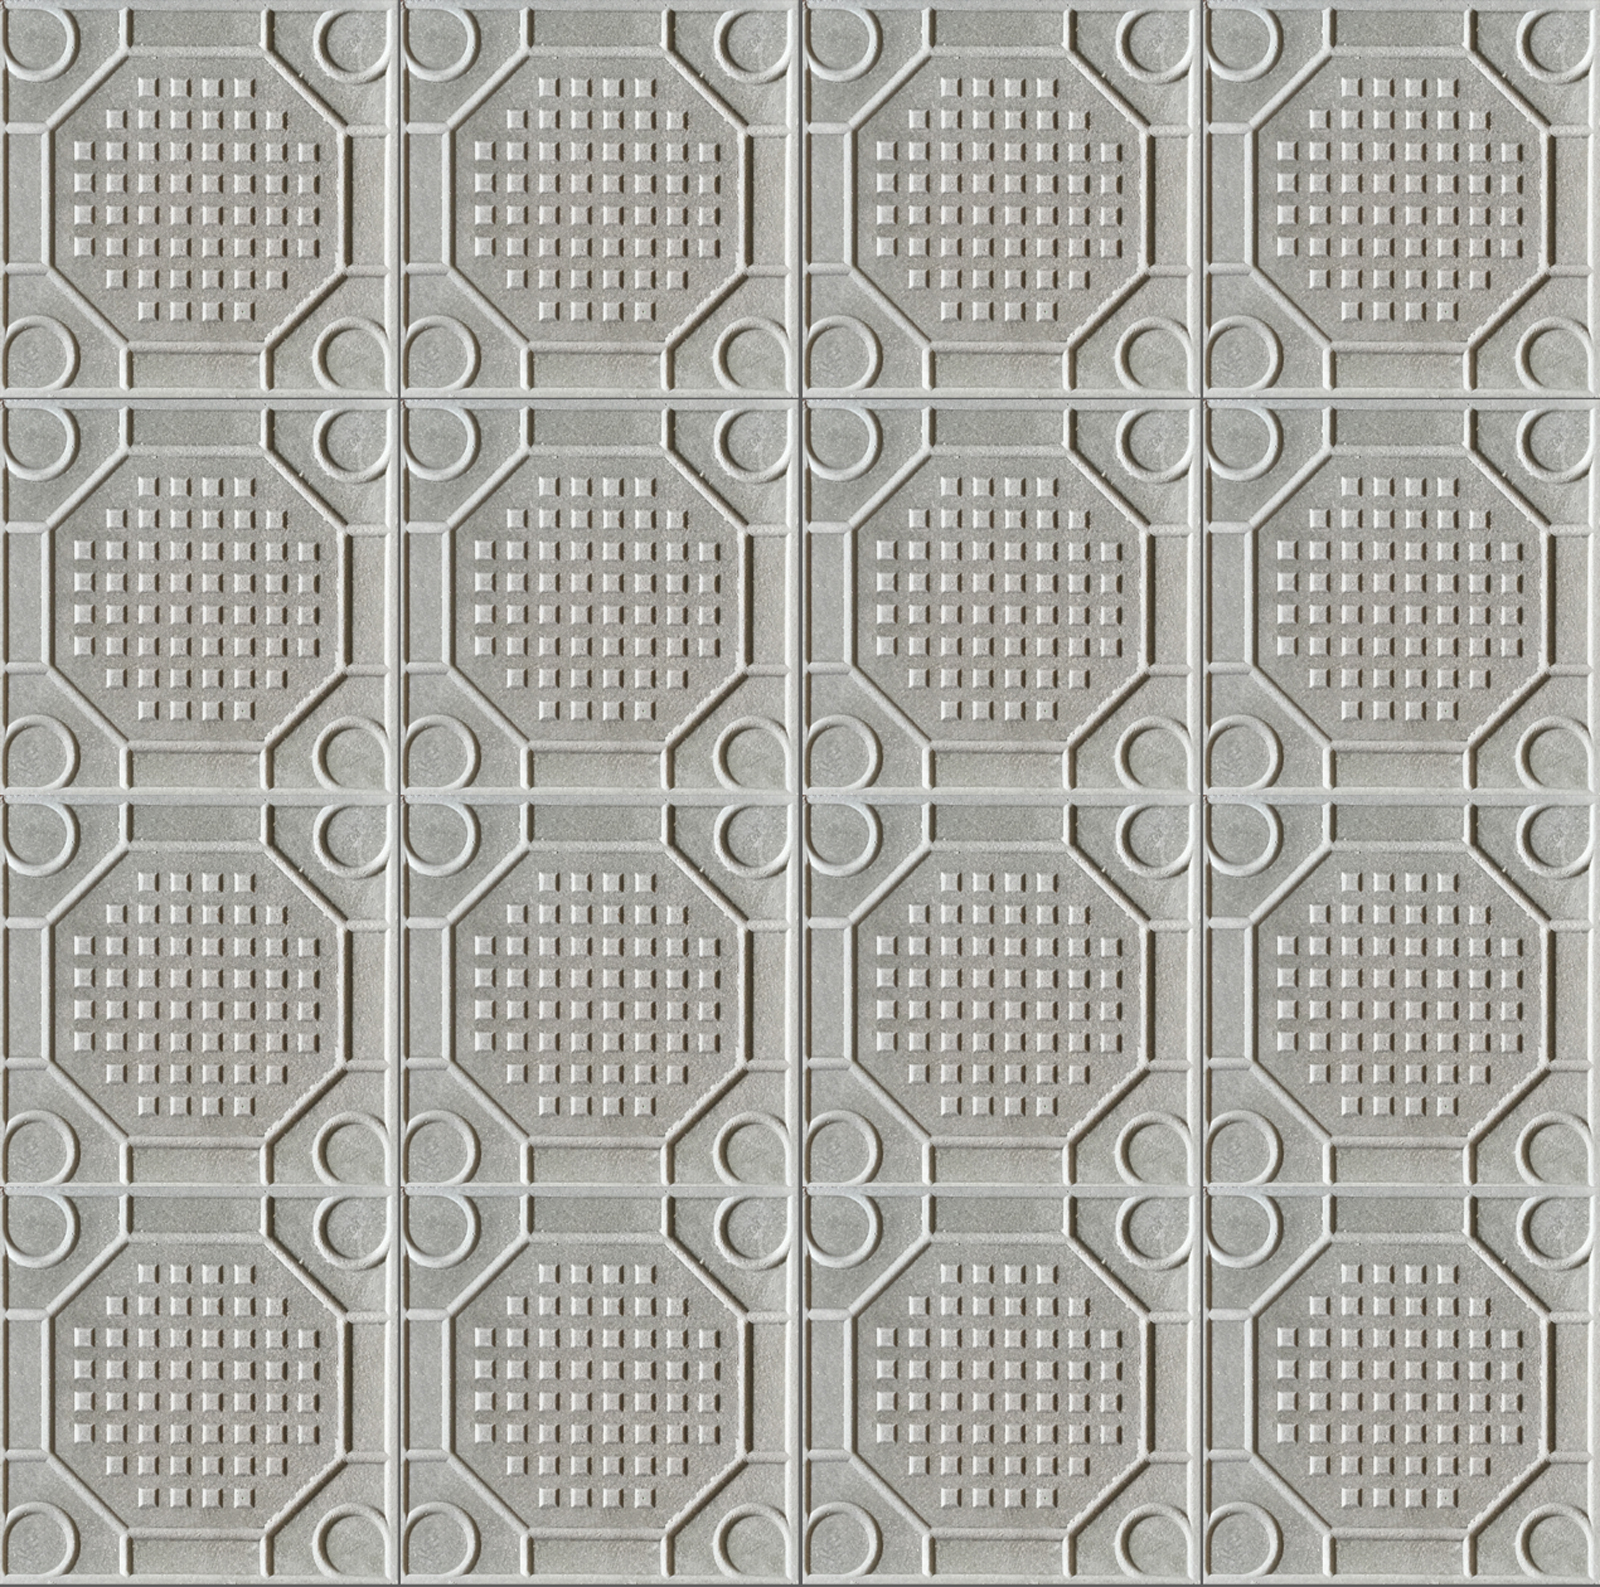 viereckige Trottoirplatte mit sechseckigem Muster